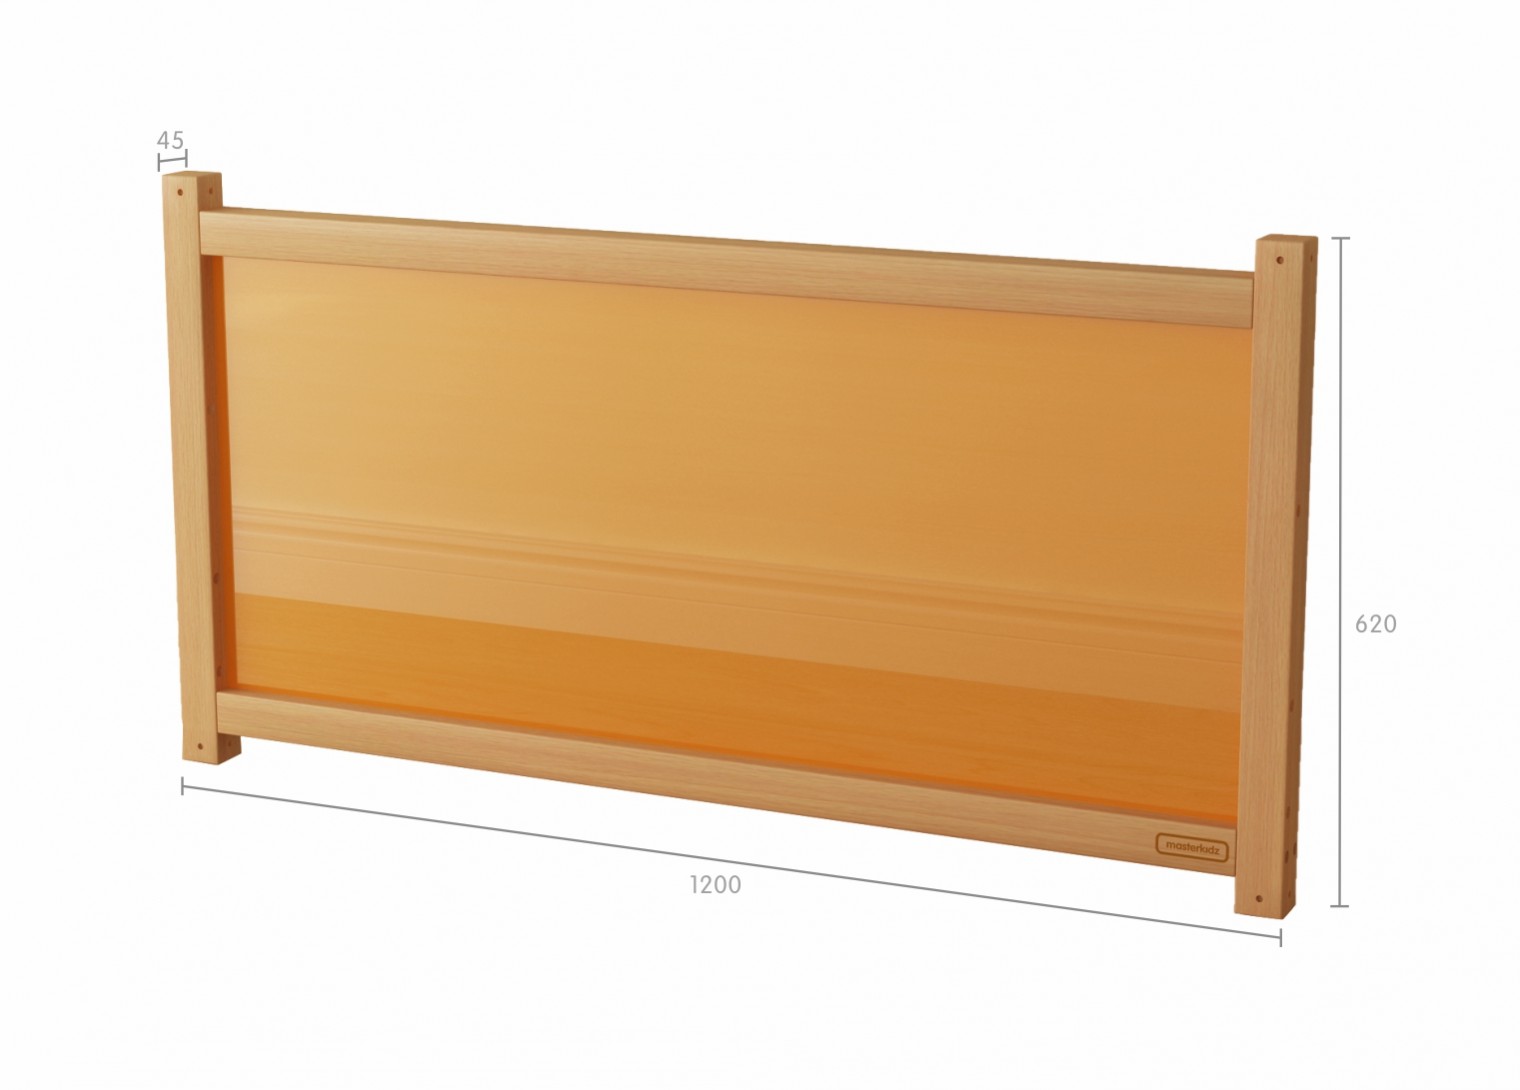 620H x 1200L Divider Panel - Translucent Orange